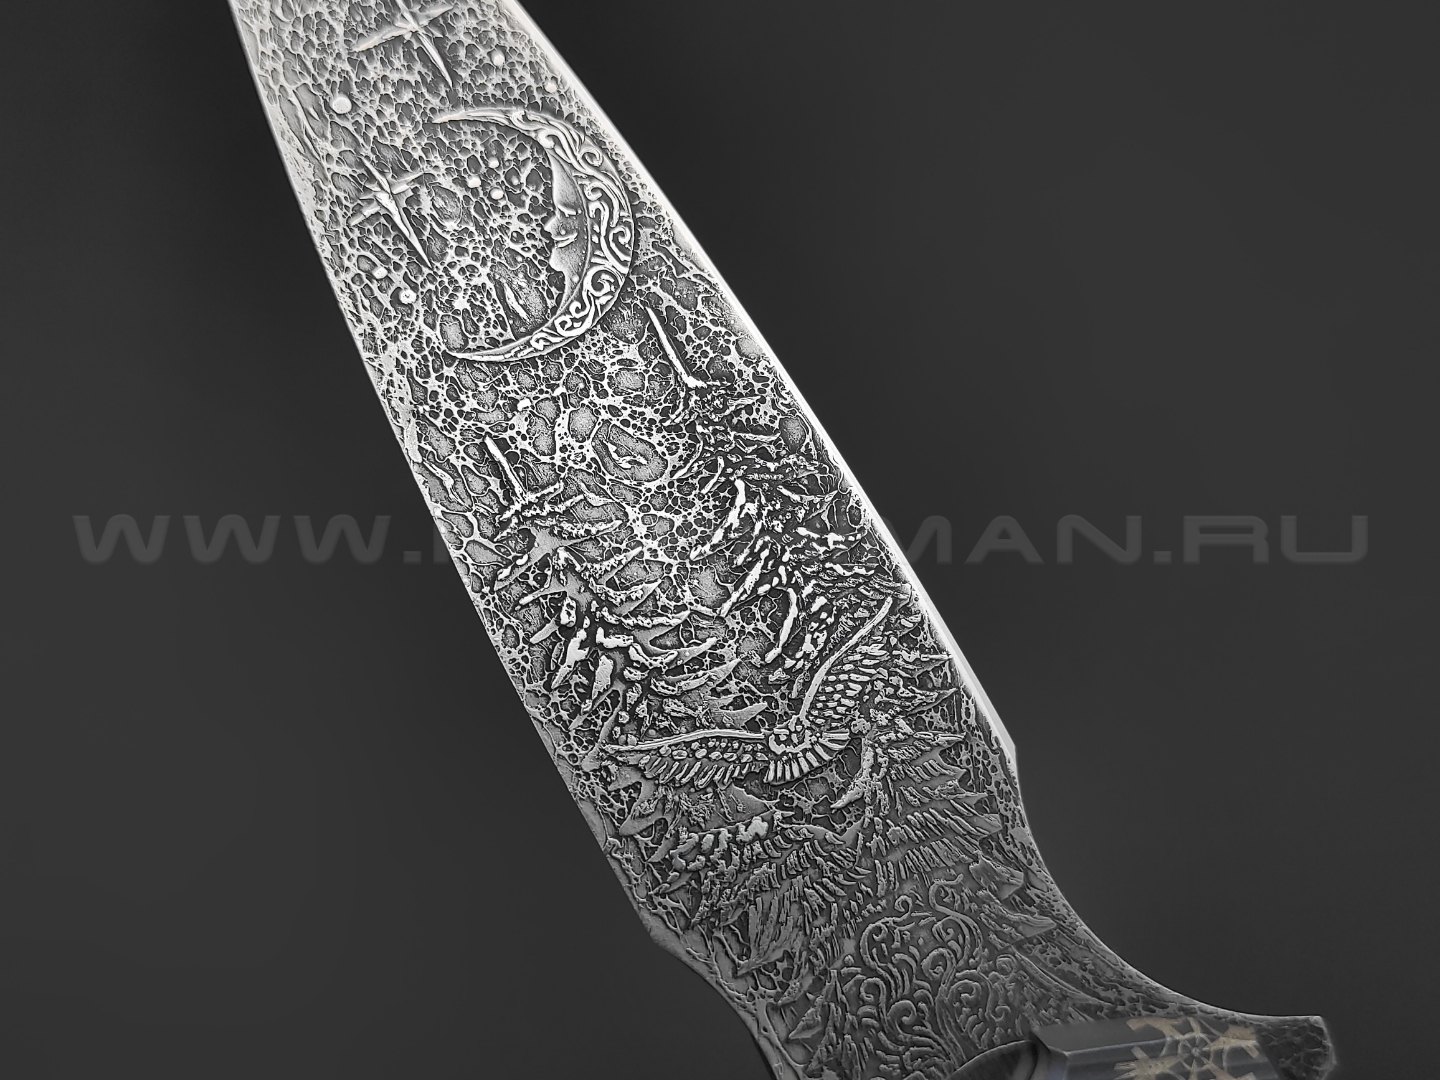 Neyris Knives складной нож ТаоРан WT сталь CPM Magnacut, рукоять Titanium, steel, травление Николая Ежелева